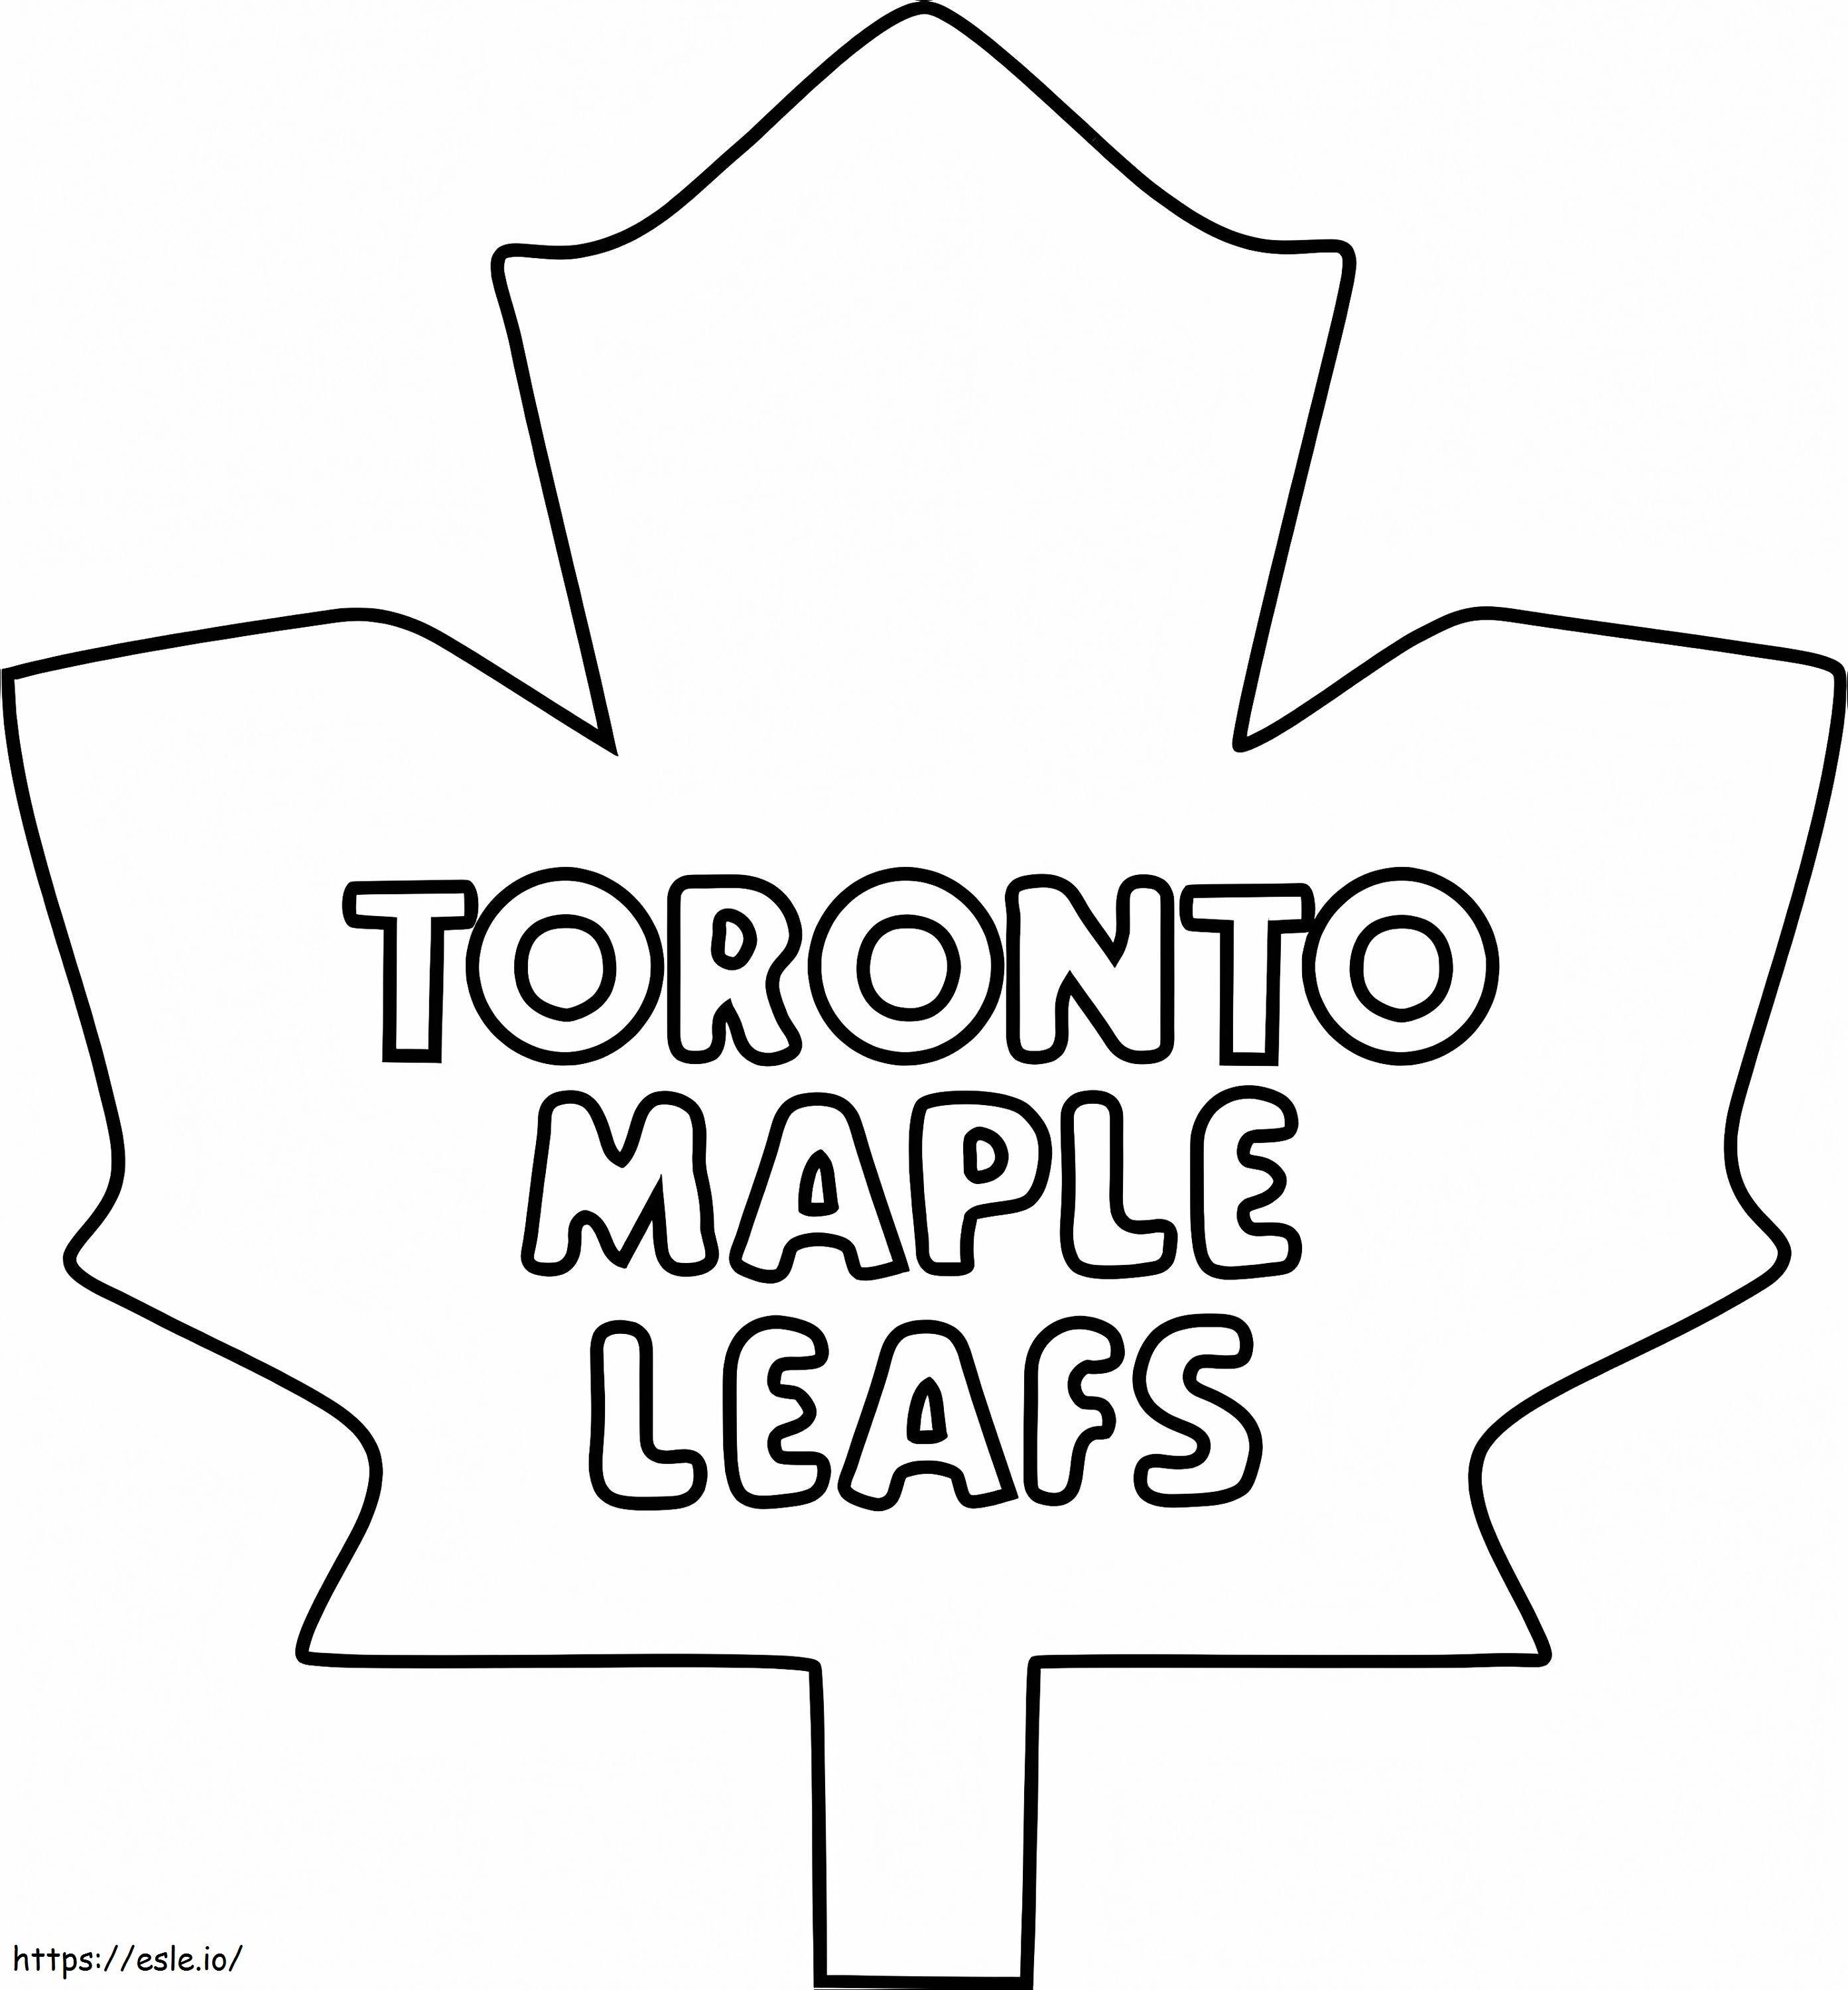 Logo delle foglie d'acero di Toronto da colorare